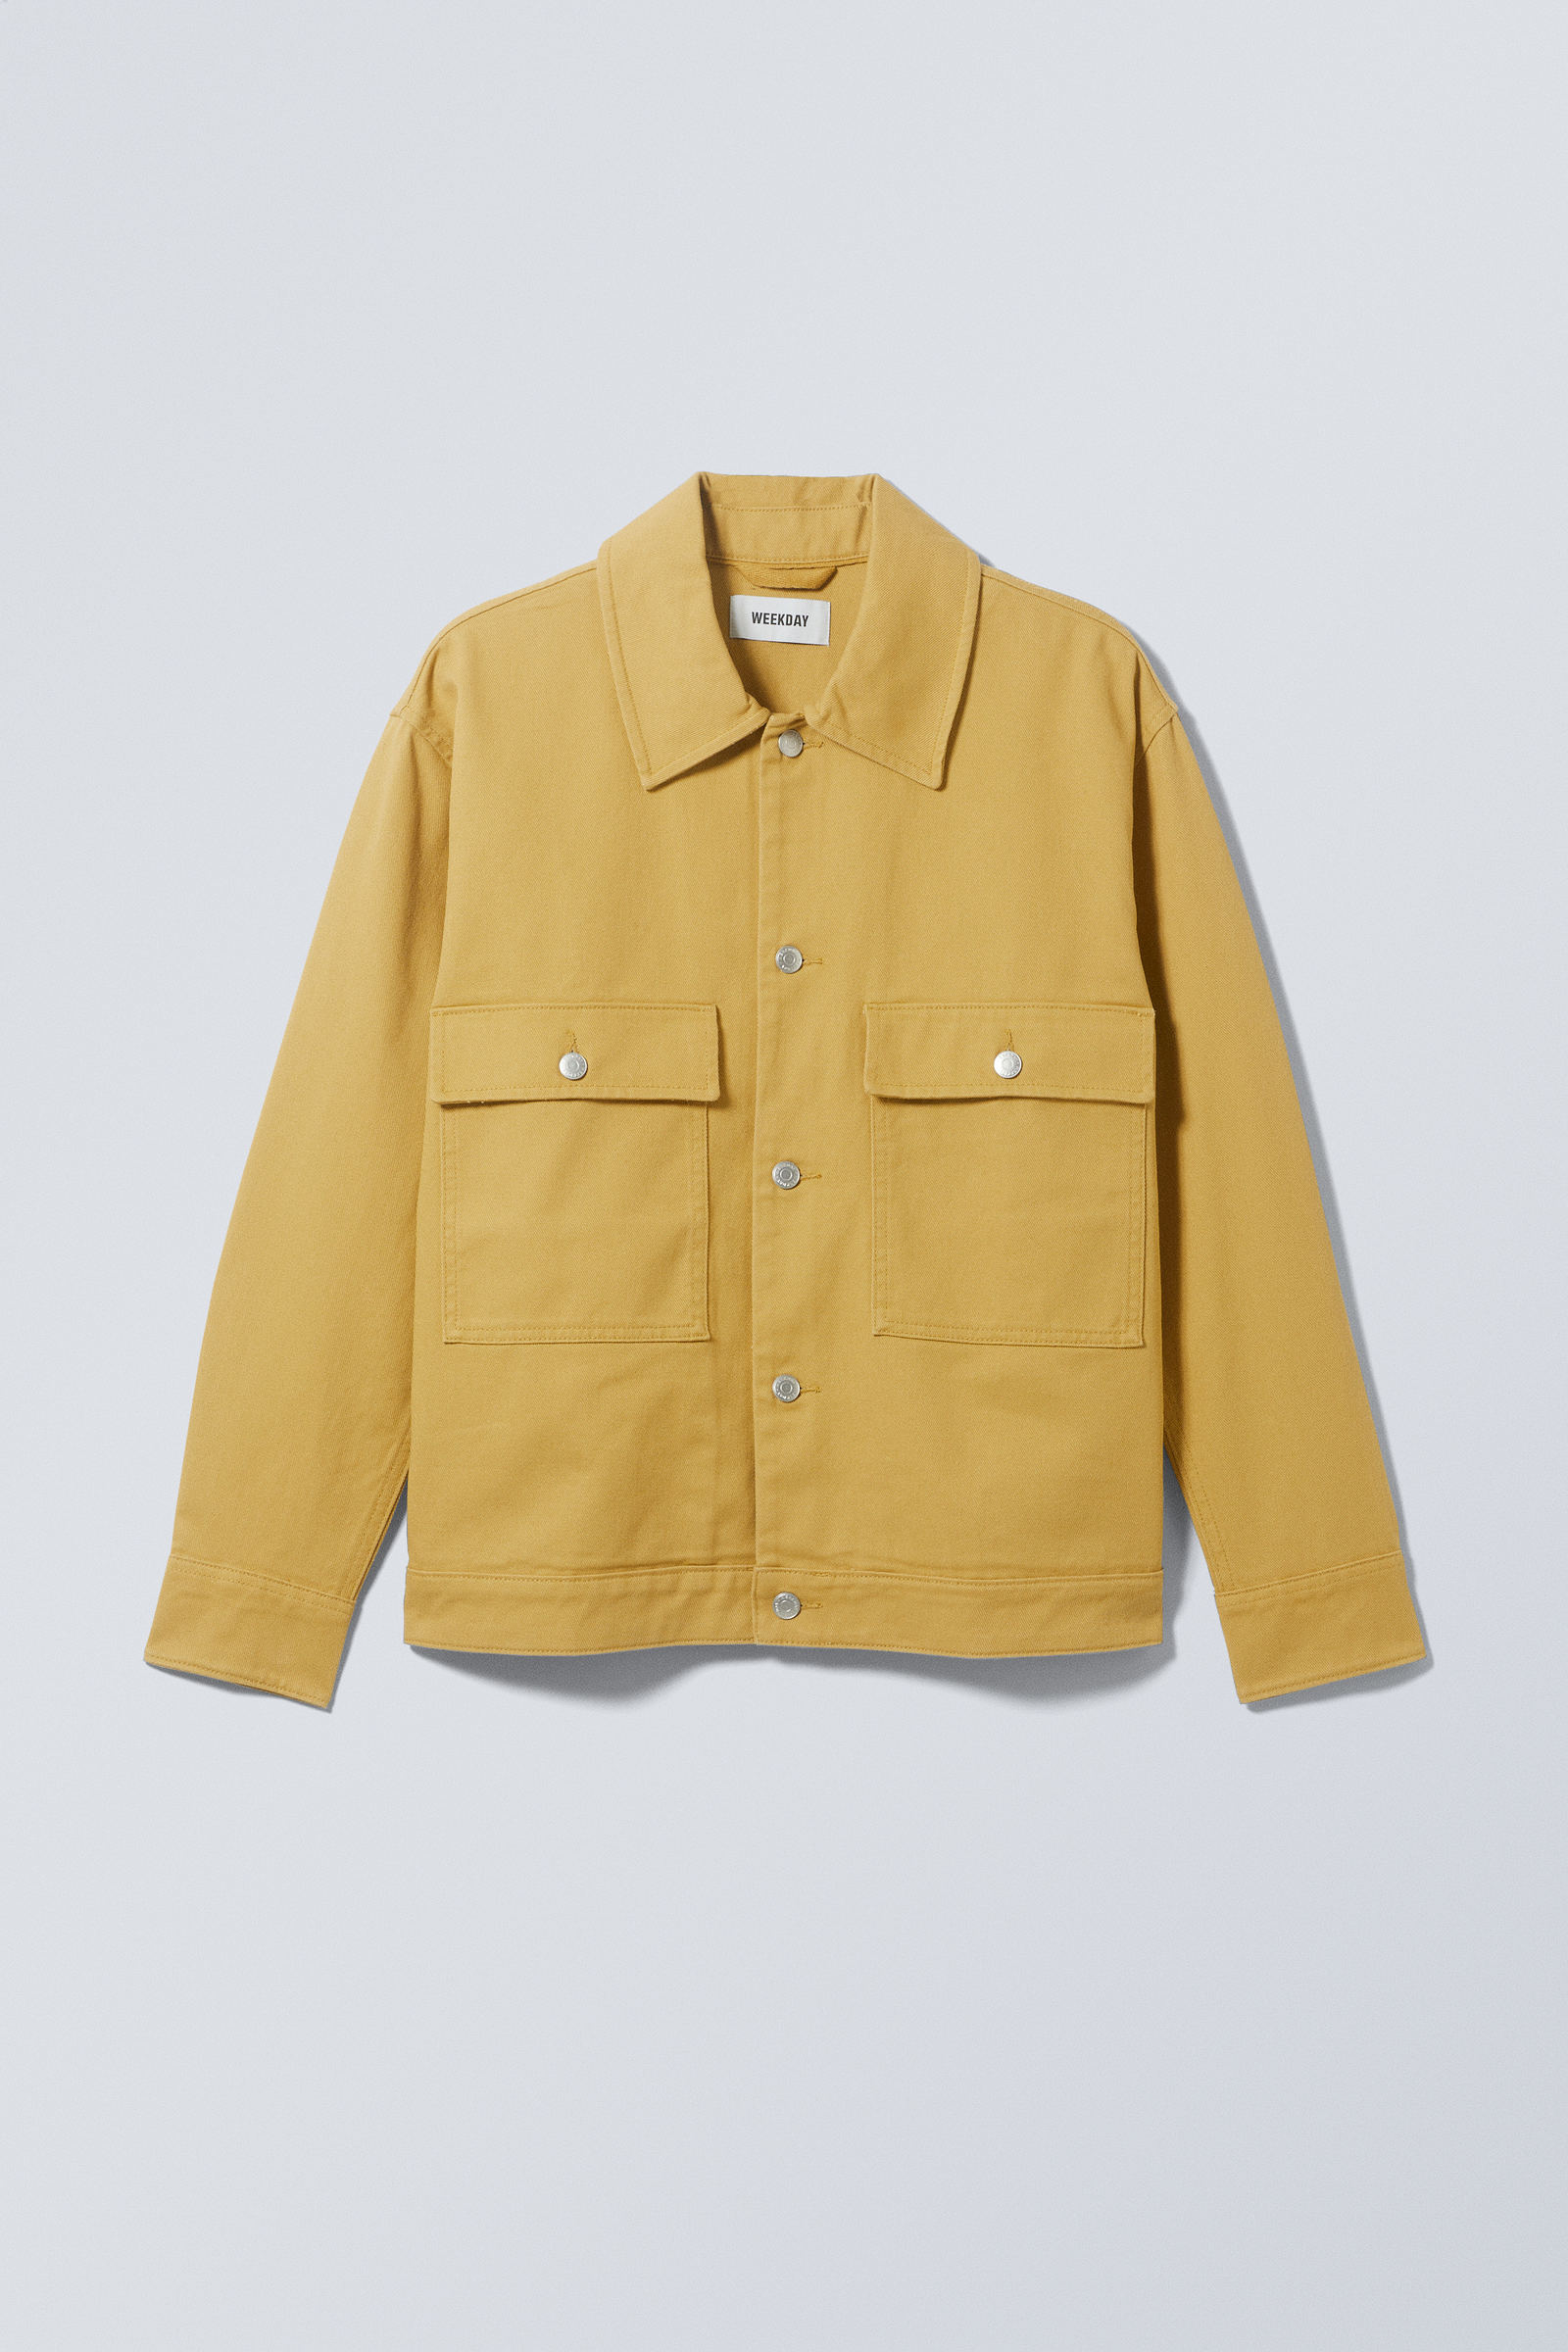 #FFFF00 - Brian Workwear Jacket - 1